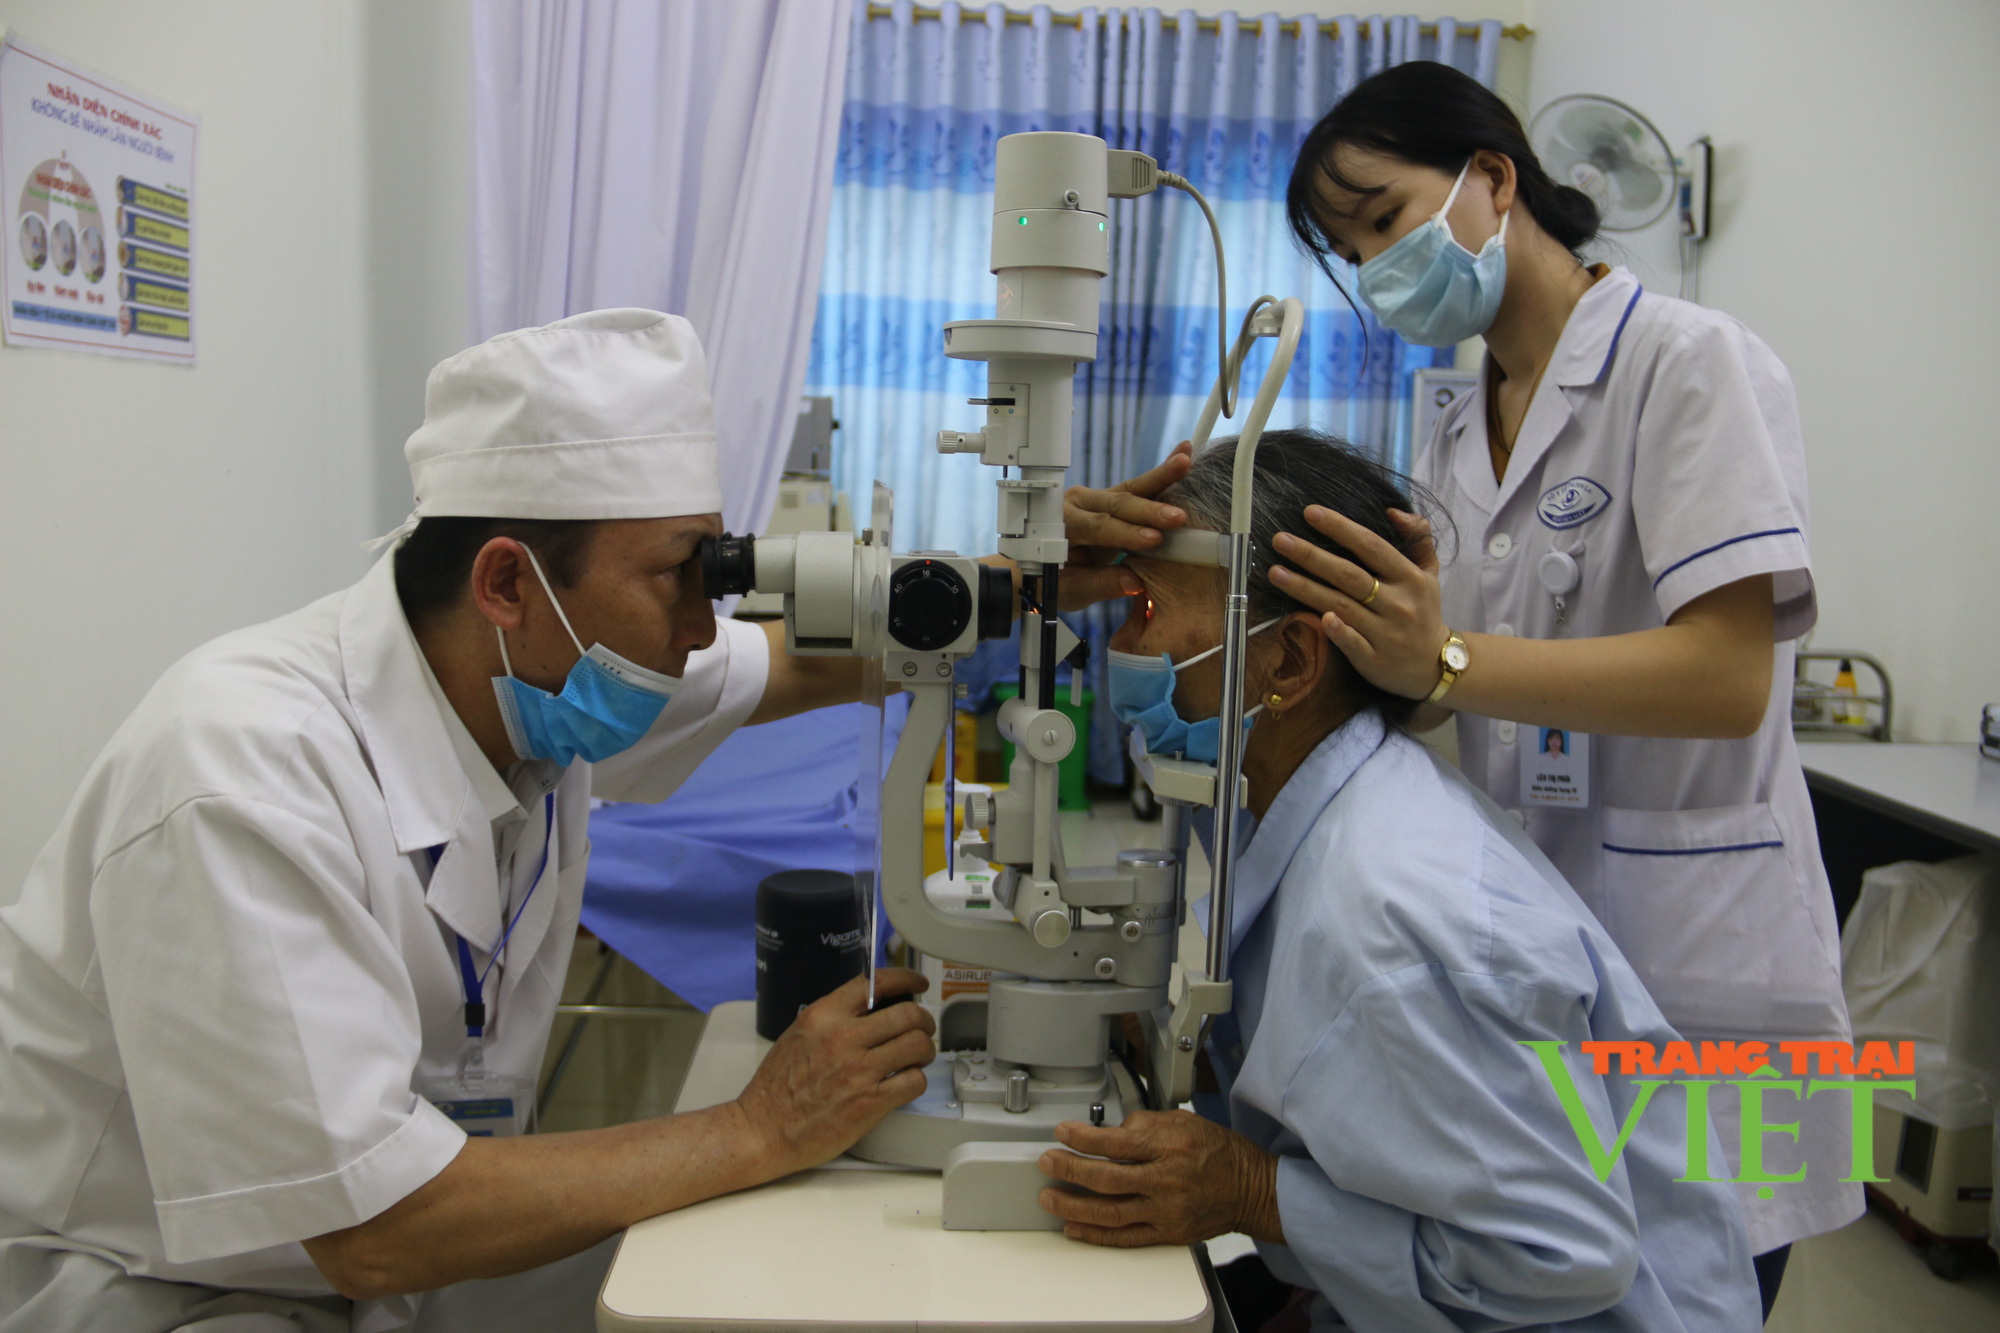  Bệnh viện mắt Sơn La: Gửi gắm niềm tin, đưa ánh sáng đến với người bệnh - Ảnh 1.